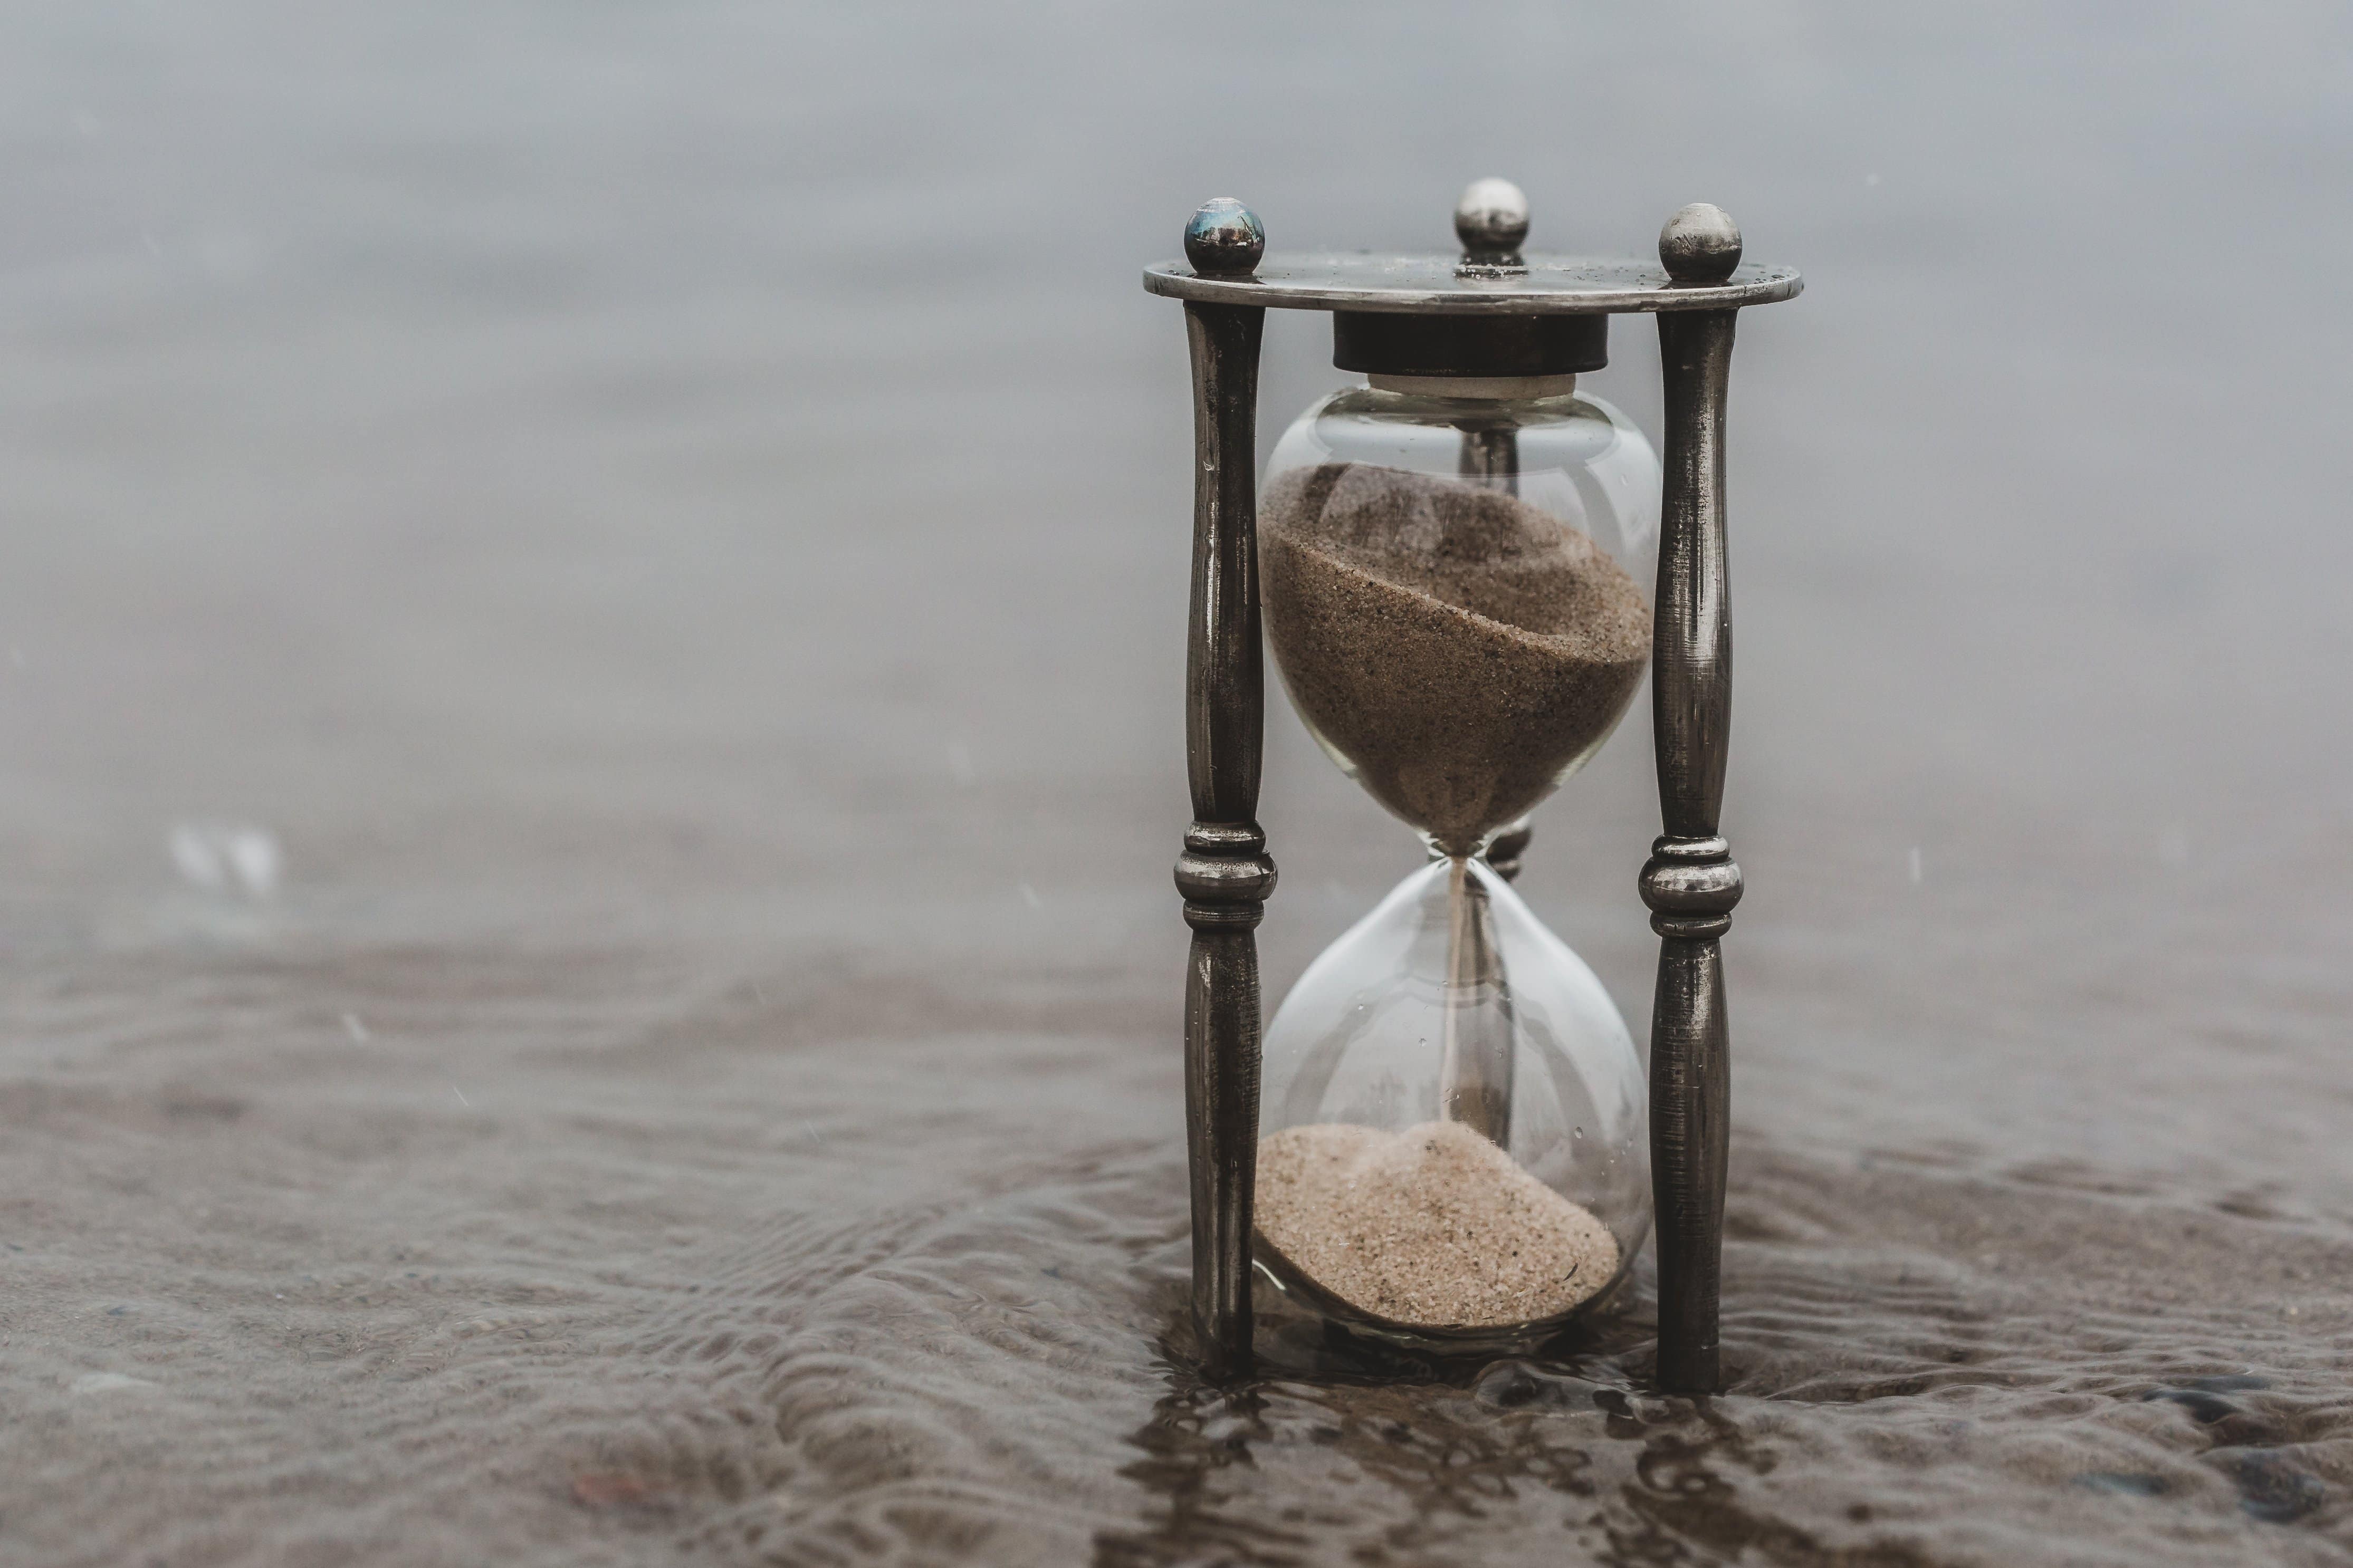 Работа песочных часов. Старинные песочные часы. Песок в песочных часах. Песочные часы Эстетика. Песочные часы в песке.